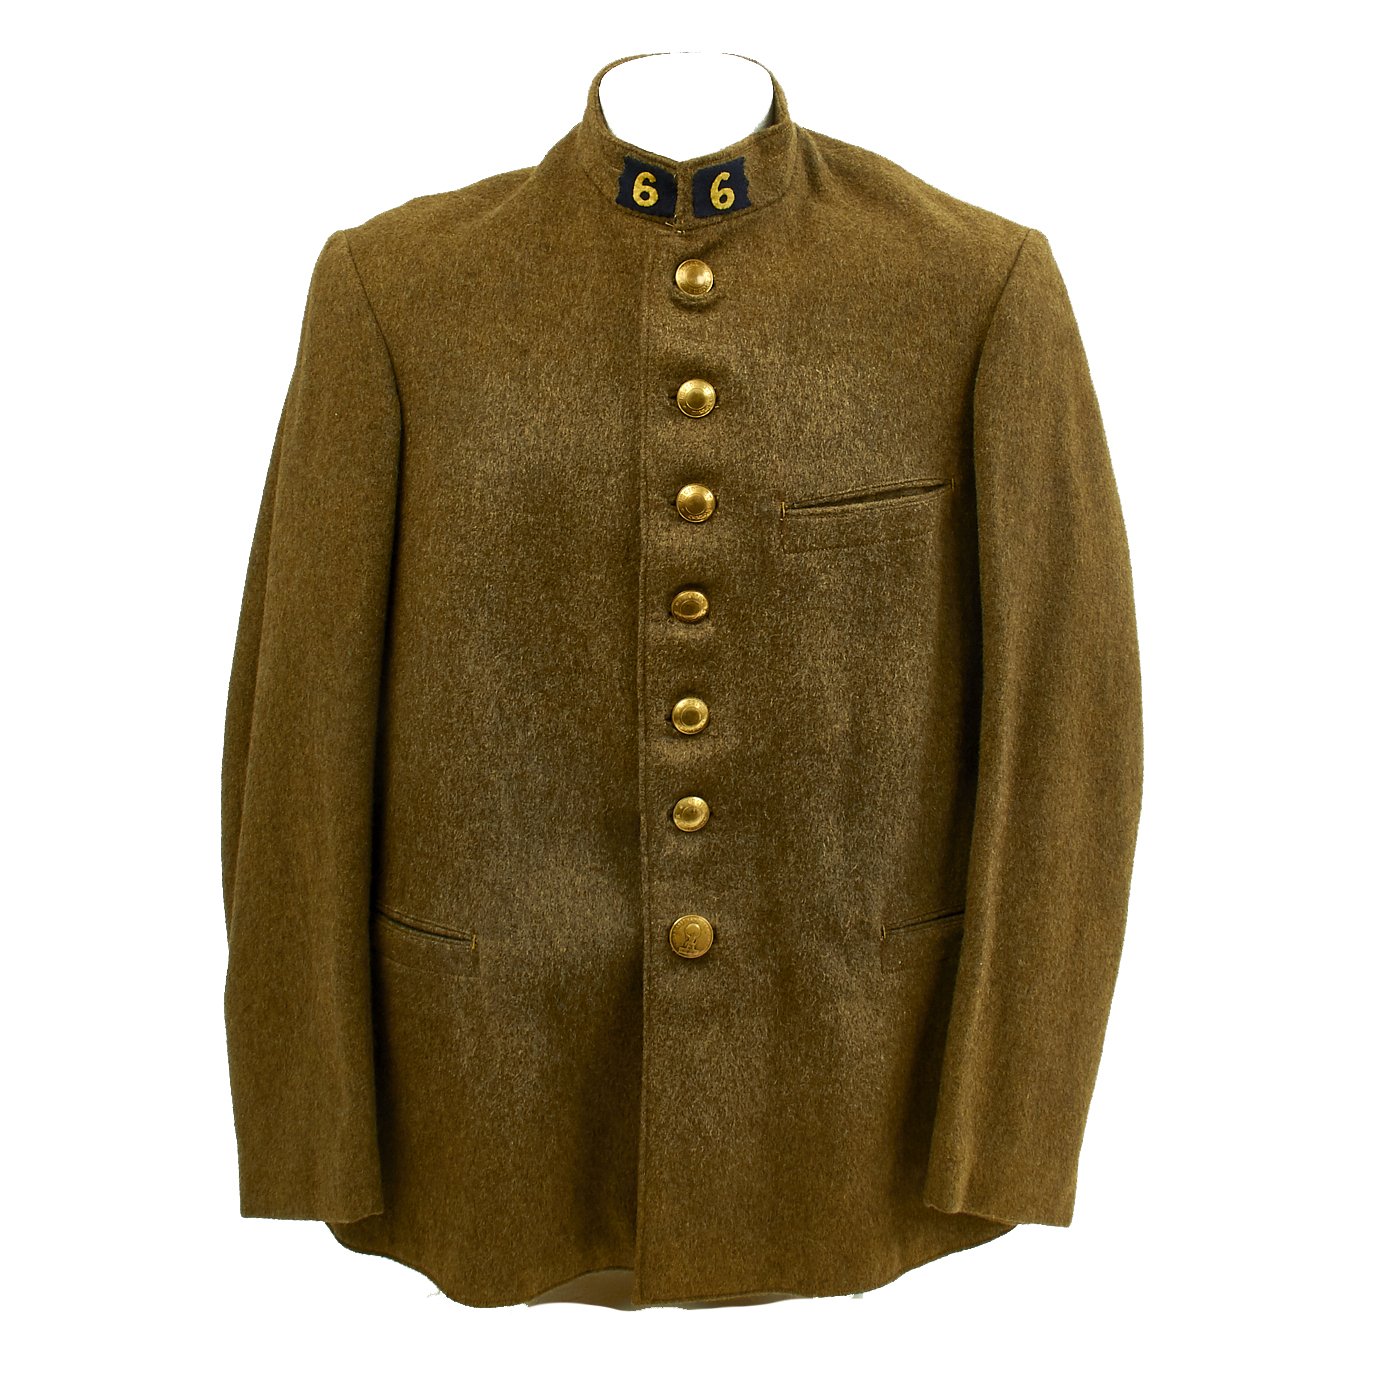 Original Wwii Era French Foreign Legion Colonial Uniform Jacket